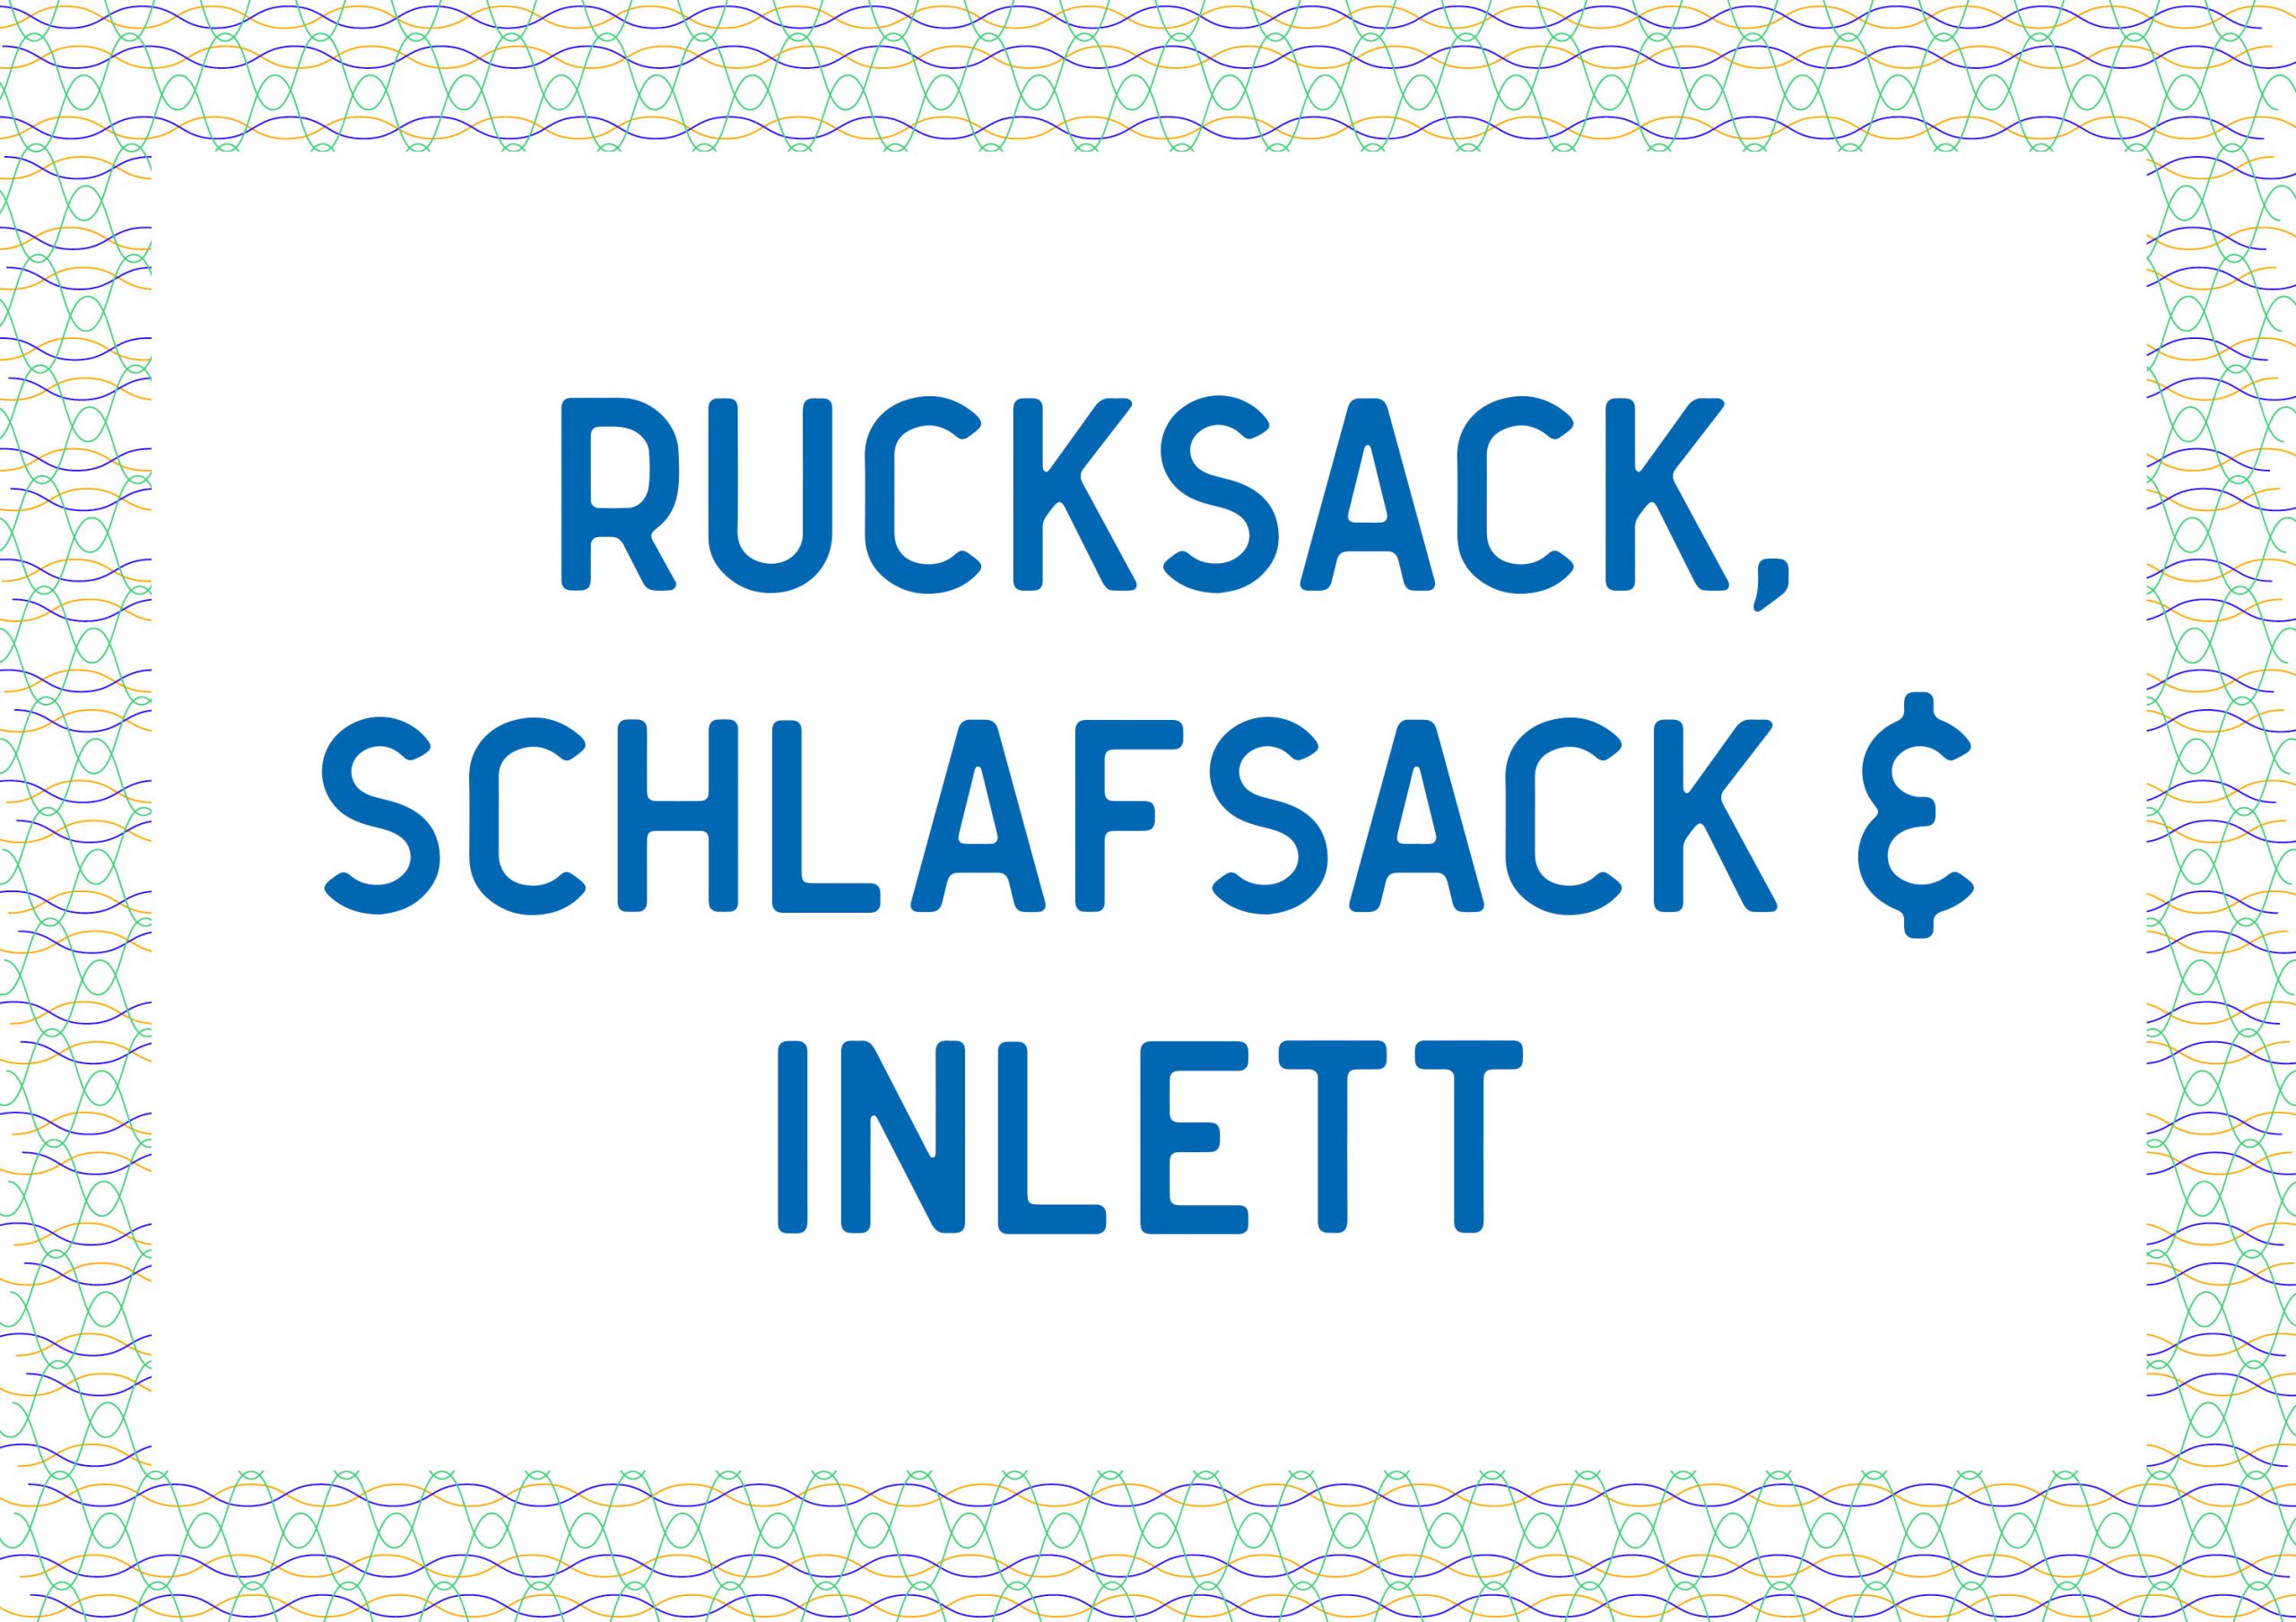 Rucksack, Schlafsack und Inlett